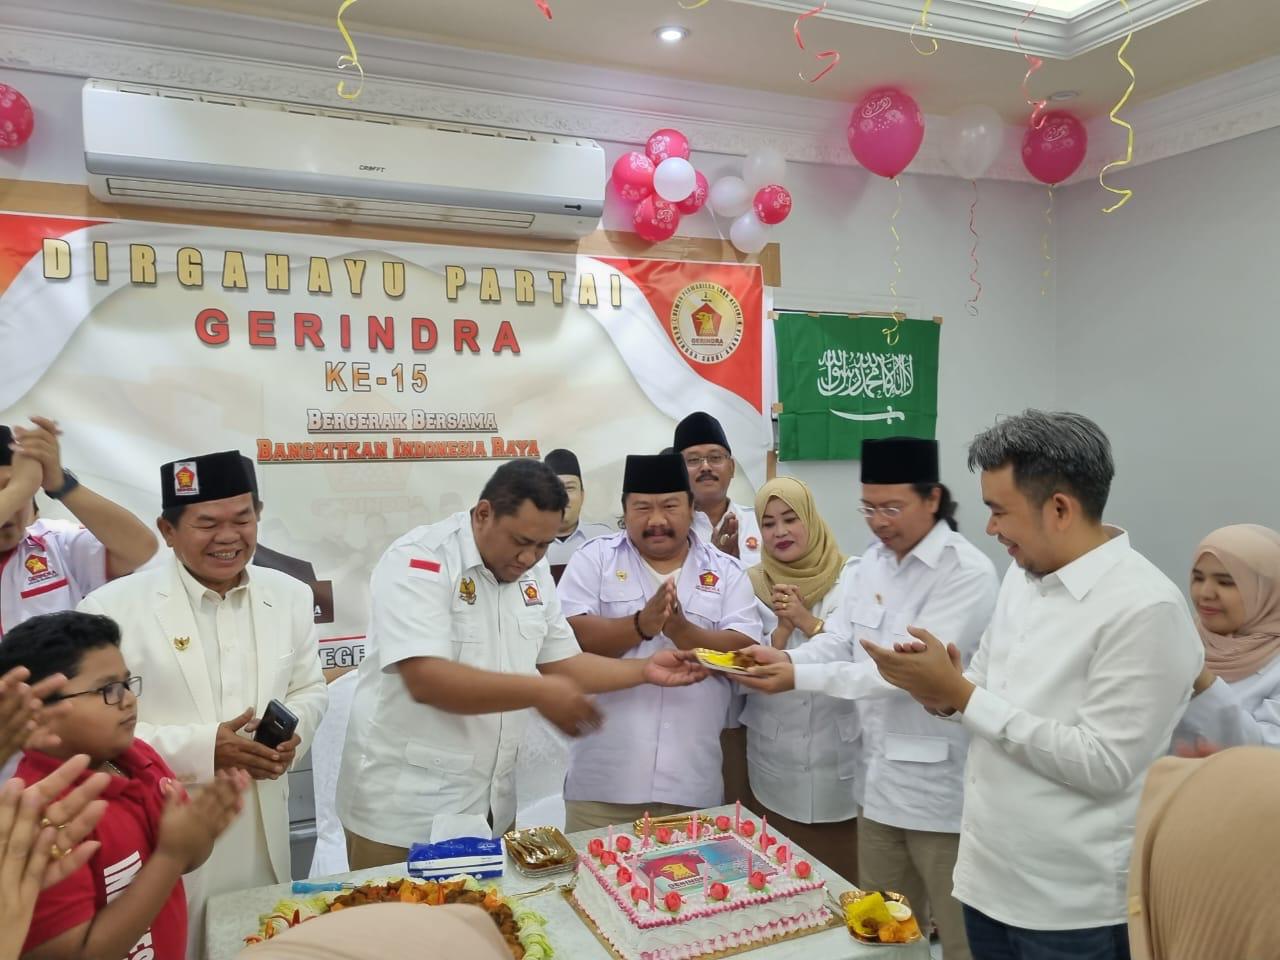 Ketua Fraksi Partai Gerindra DPRD Jatim, Gus Muhammad Fawait merayakan HUT ke-15 Partai Gerindra bersama pengurus DPLN dan pekerja migran di Arab Saudi